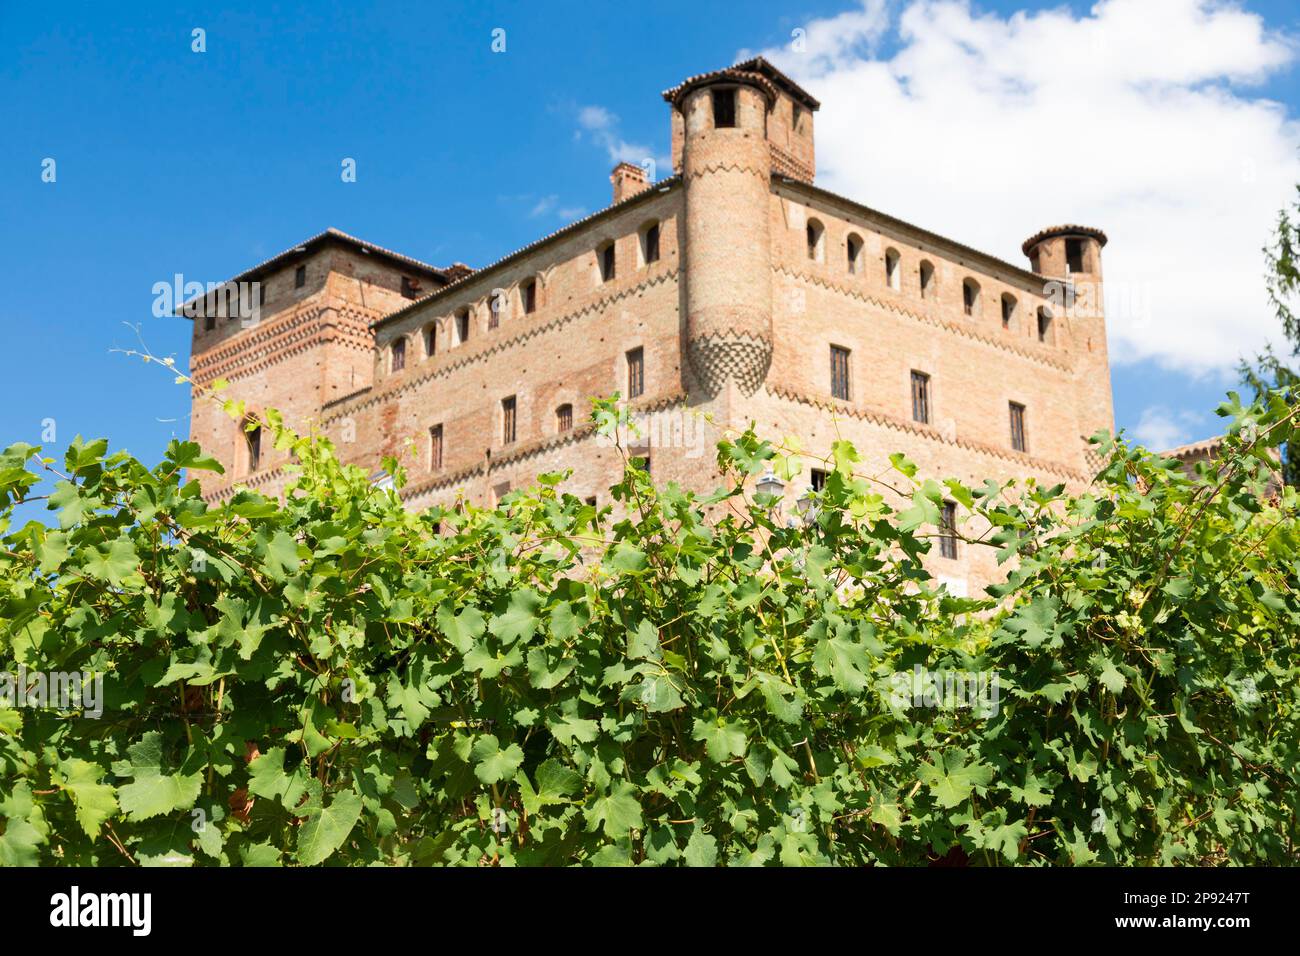 Vigneto in Piemonte, Italia, con il castello di Grinzane Cavour sullo sfondo. Le Langhe è il comprensorio del vino Barolo Foto Stock